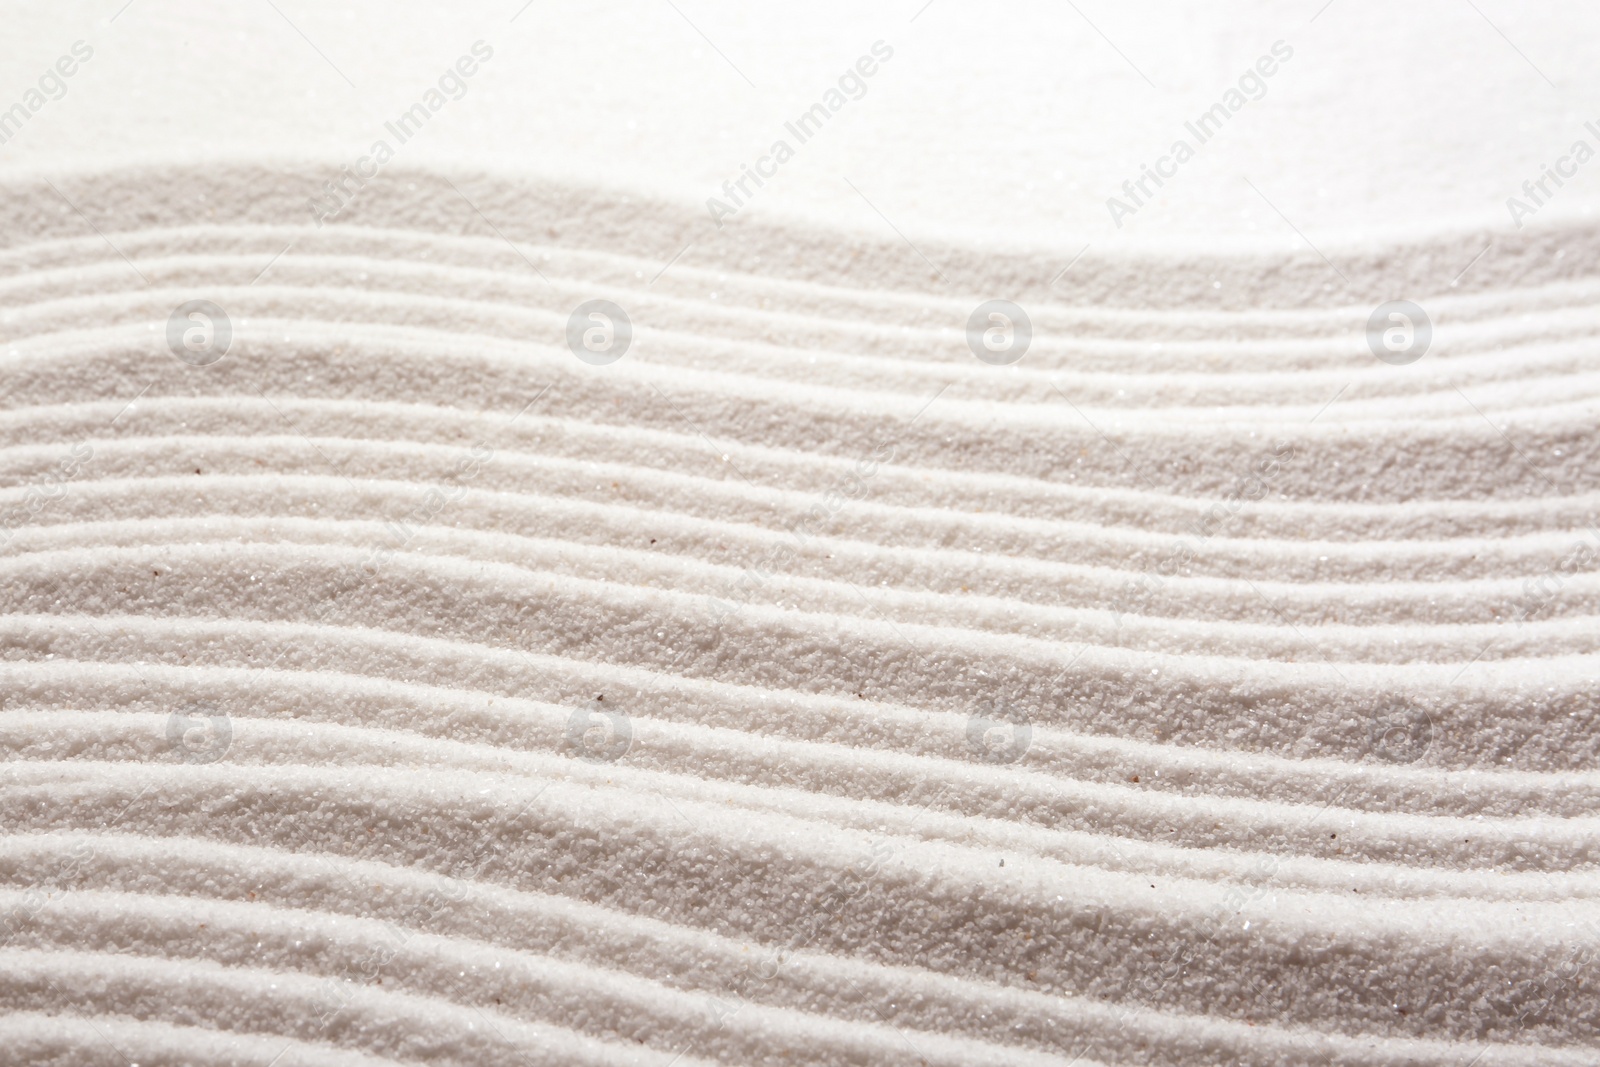 Photo of Zen rock garden. Wave pattern on white sand